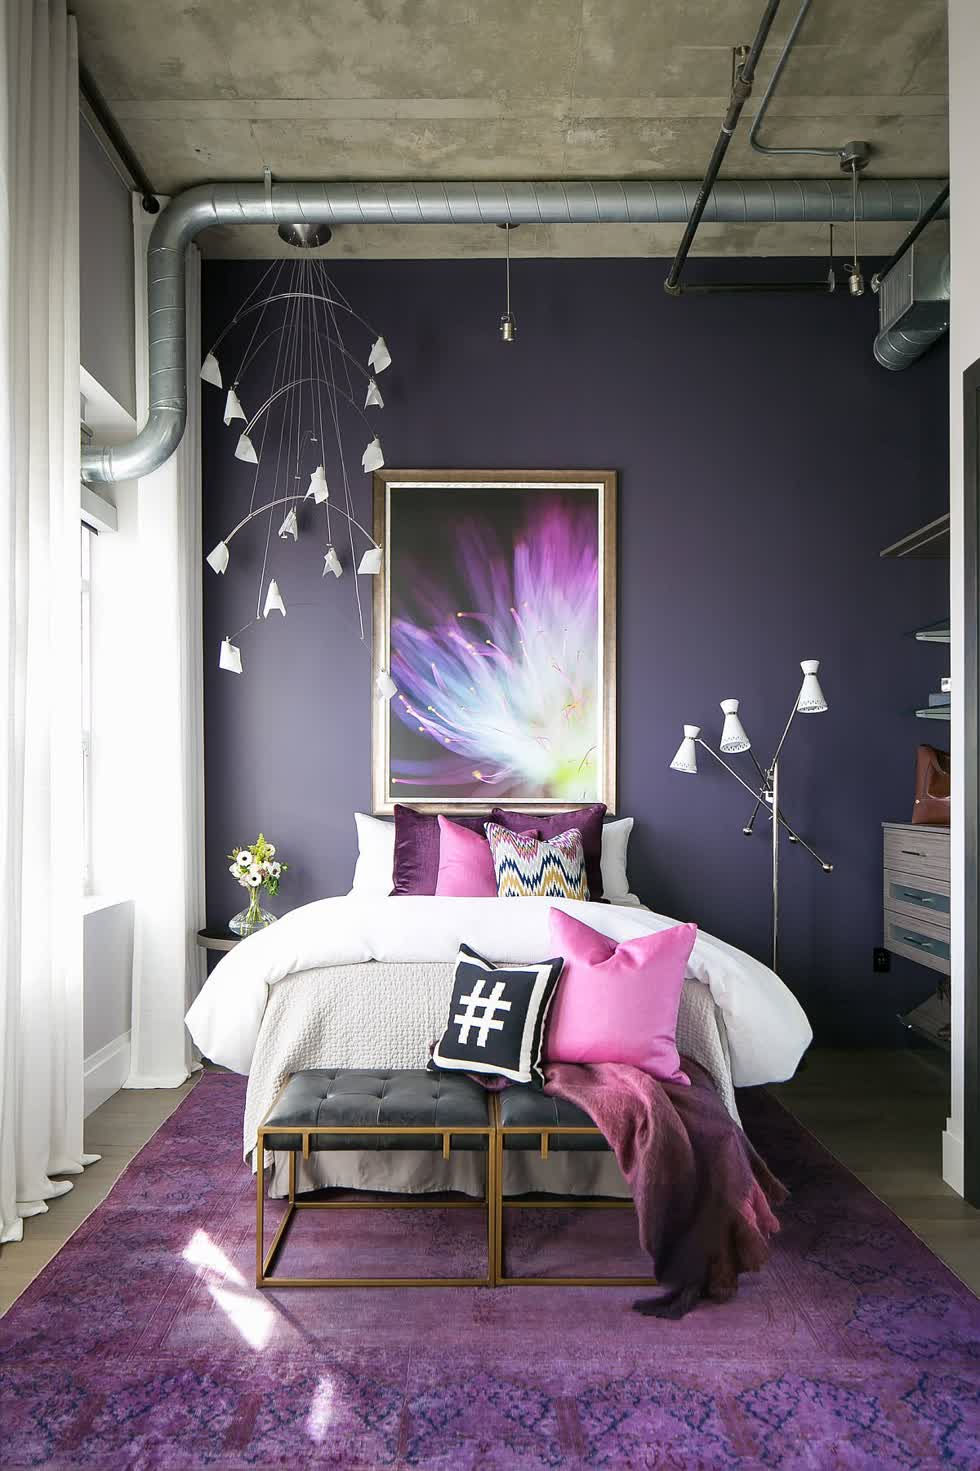 Trần bê tông và ống dẫn tiếp xúc mang lại vẻ đẹp công nghiệp cho phòng ngủ đầy màu sắc này trong căn phòng màu tím này.